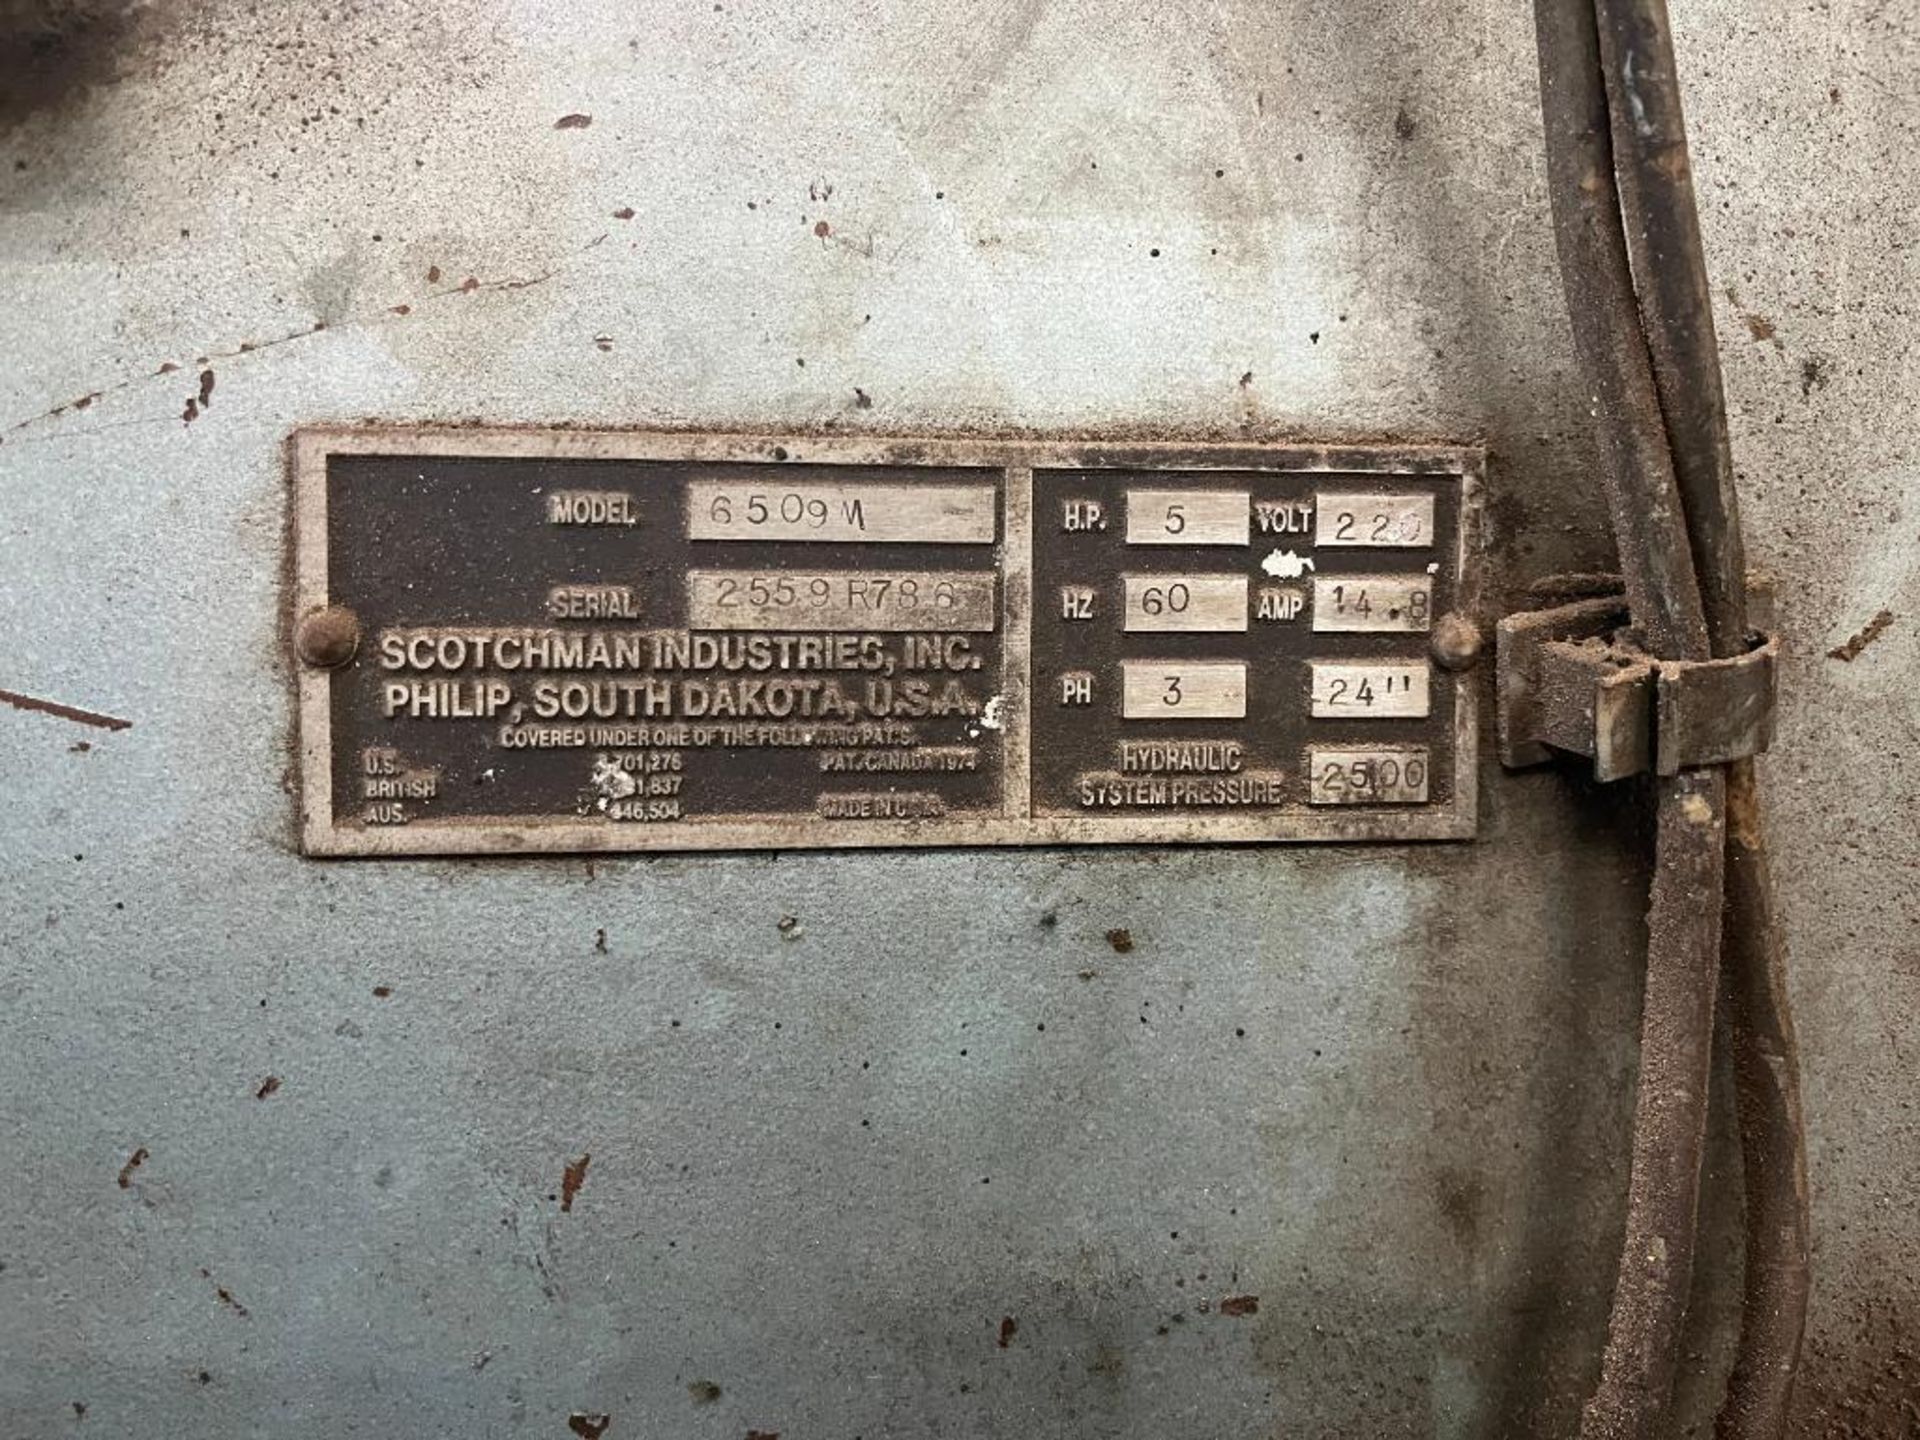 Scothman Industries, INC. Ironworker, Model 6509M, S/N 2559R786. - Image 6 of 6